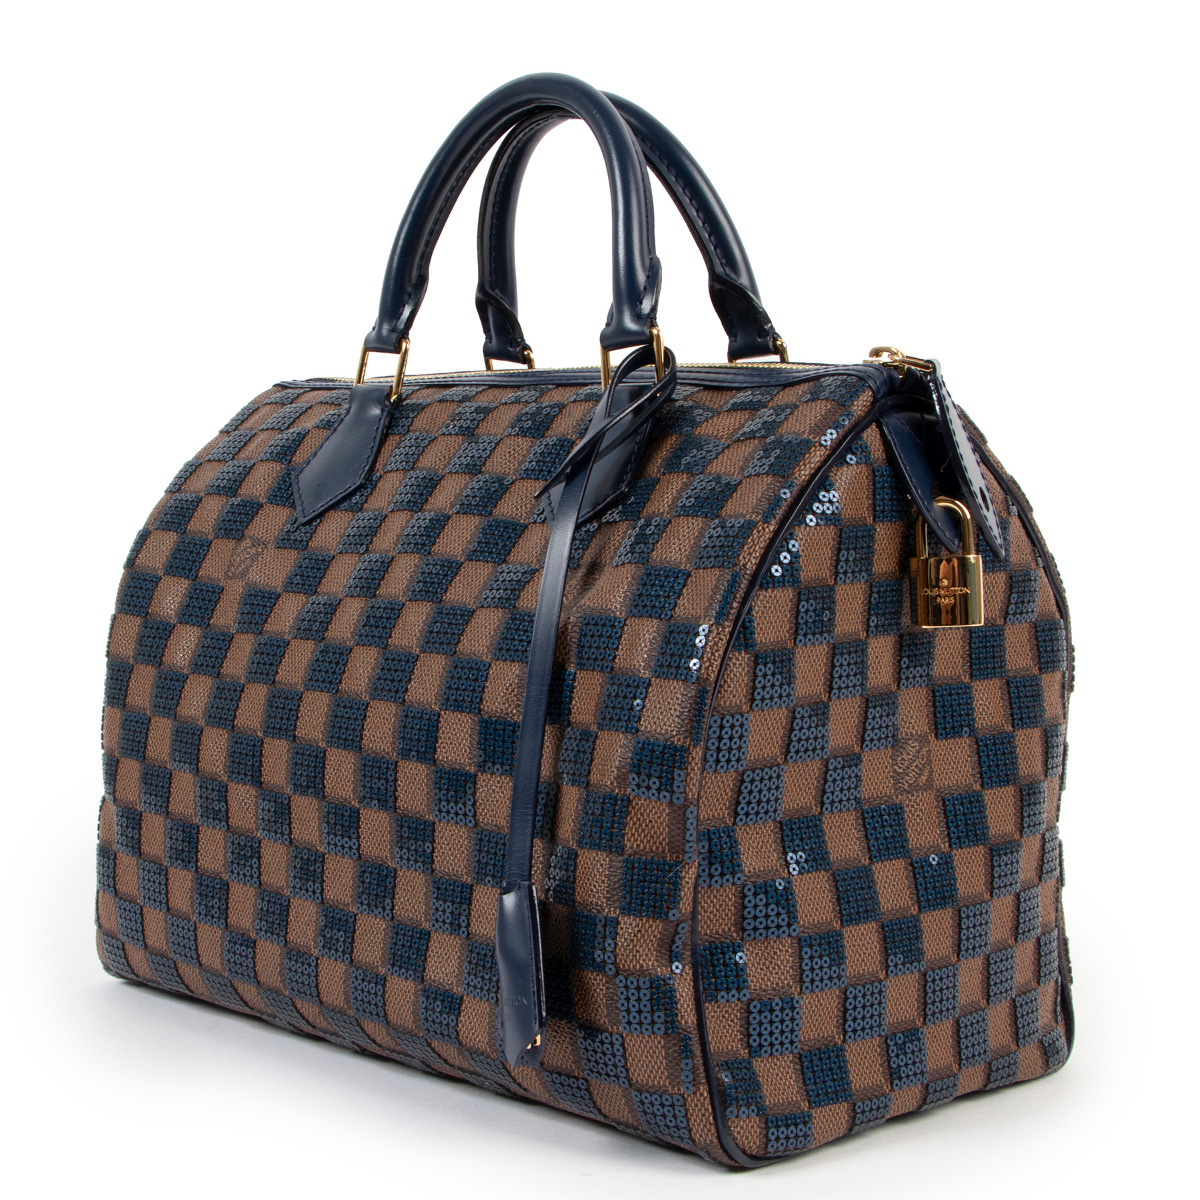 Louis Vuitton Limited Edition Bordeaux Damier Paillettes Speedy 30 Bag  (747) - ShopperBoard